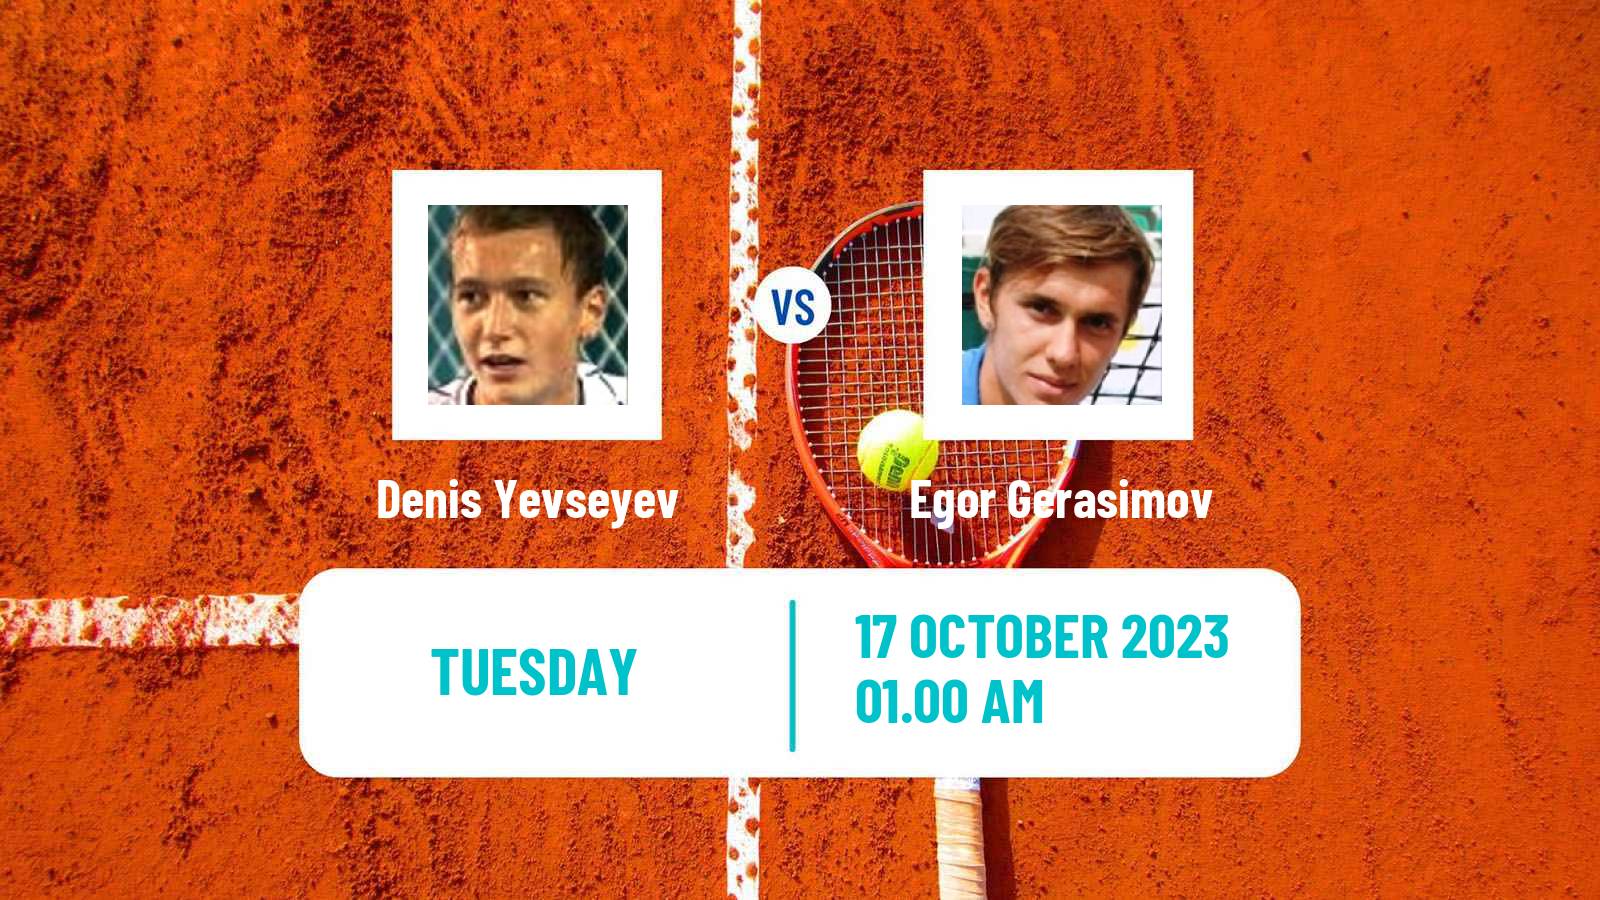 Tennis Shenzhen 3 Challenger Men Denis Yevseyev - Egor Gerasimov